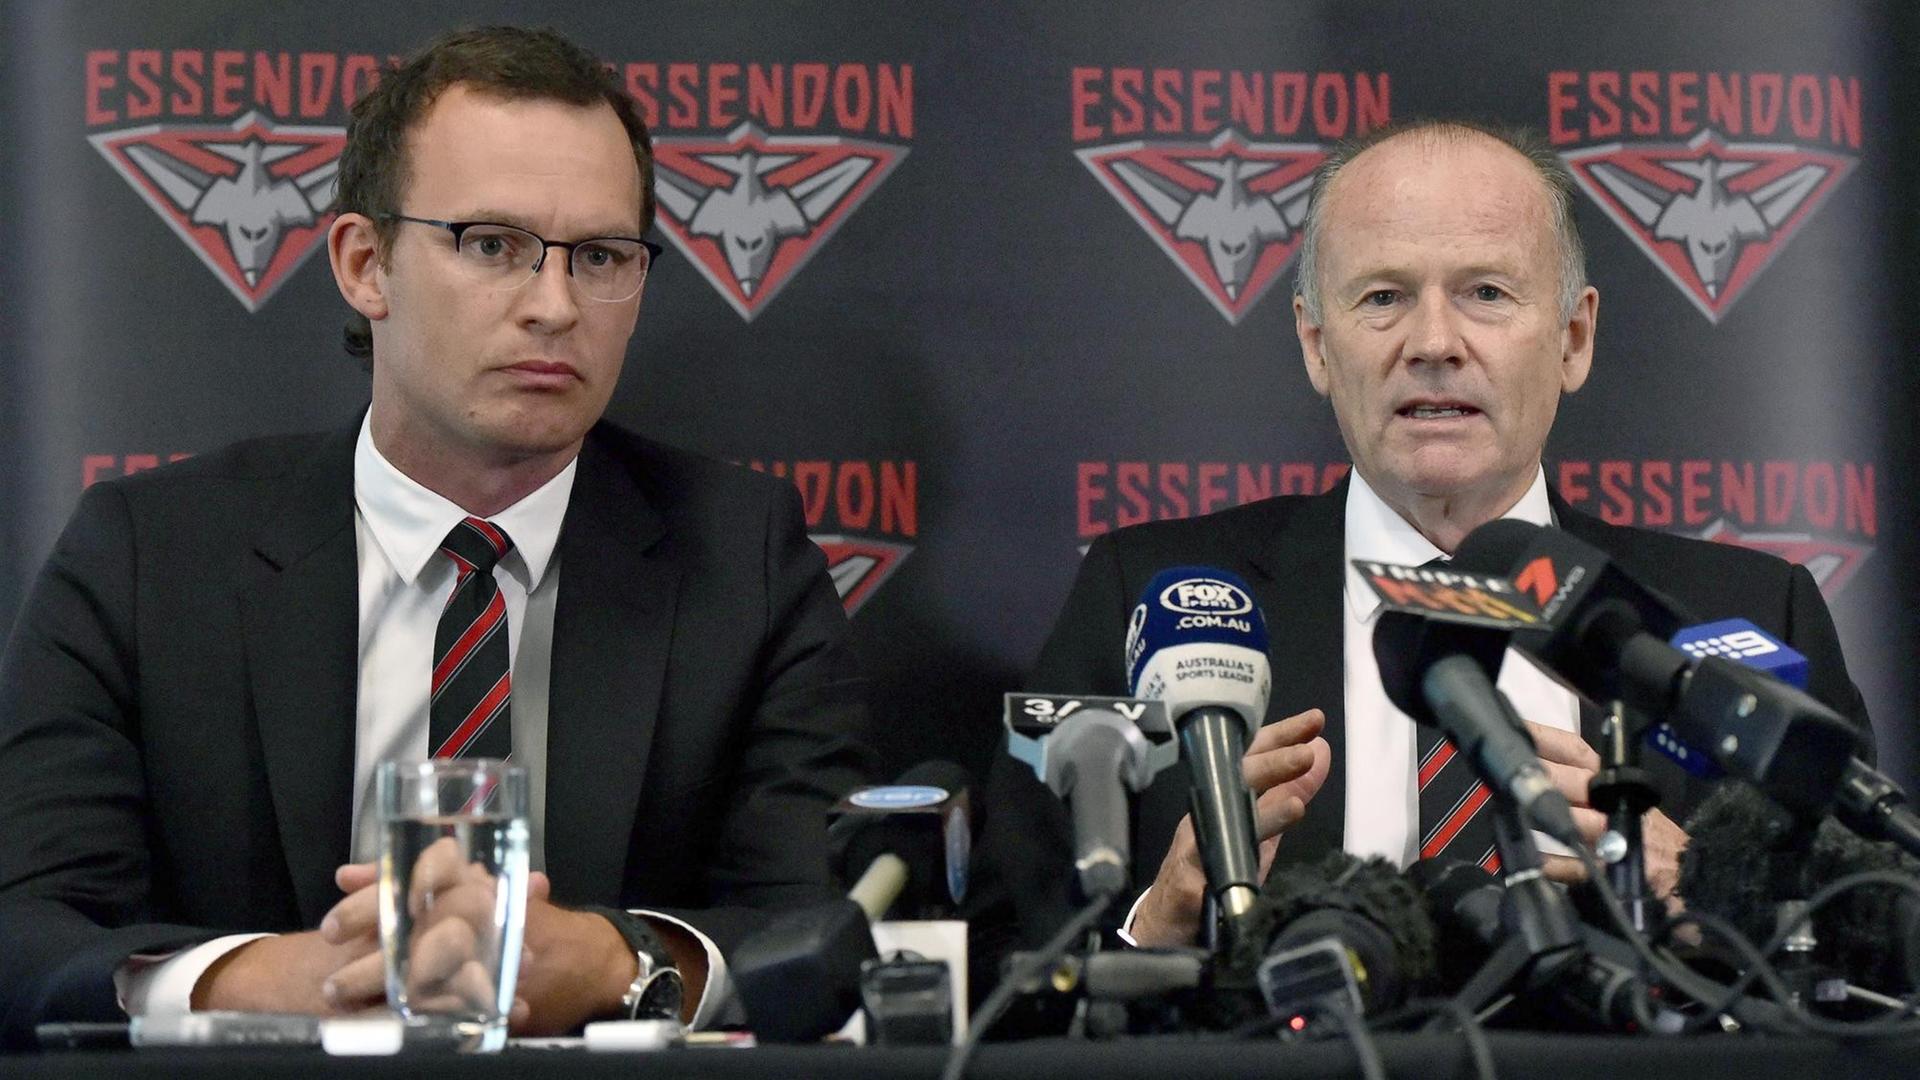 Die Spitzen des Football-Vereins "Essendon Bombers" - Geschäftsführer Campbell und Präsident Tanner - äußern sich zu den Doping-Urteilen gegen ihre Spieler.